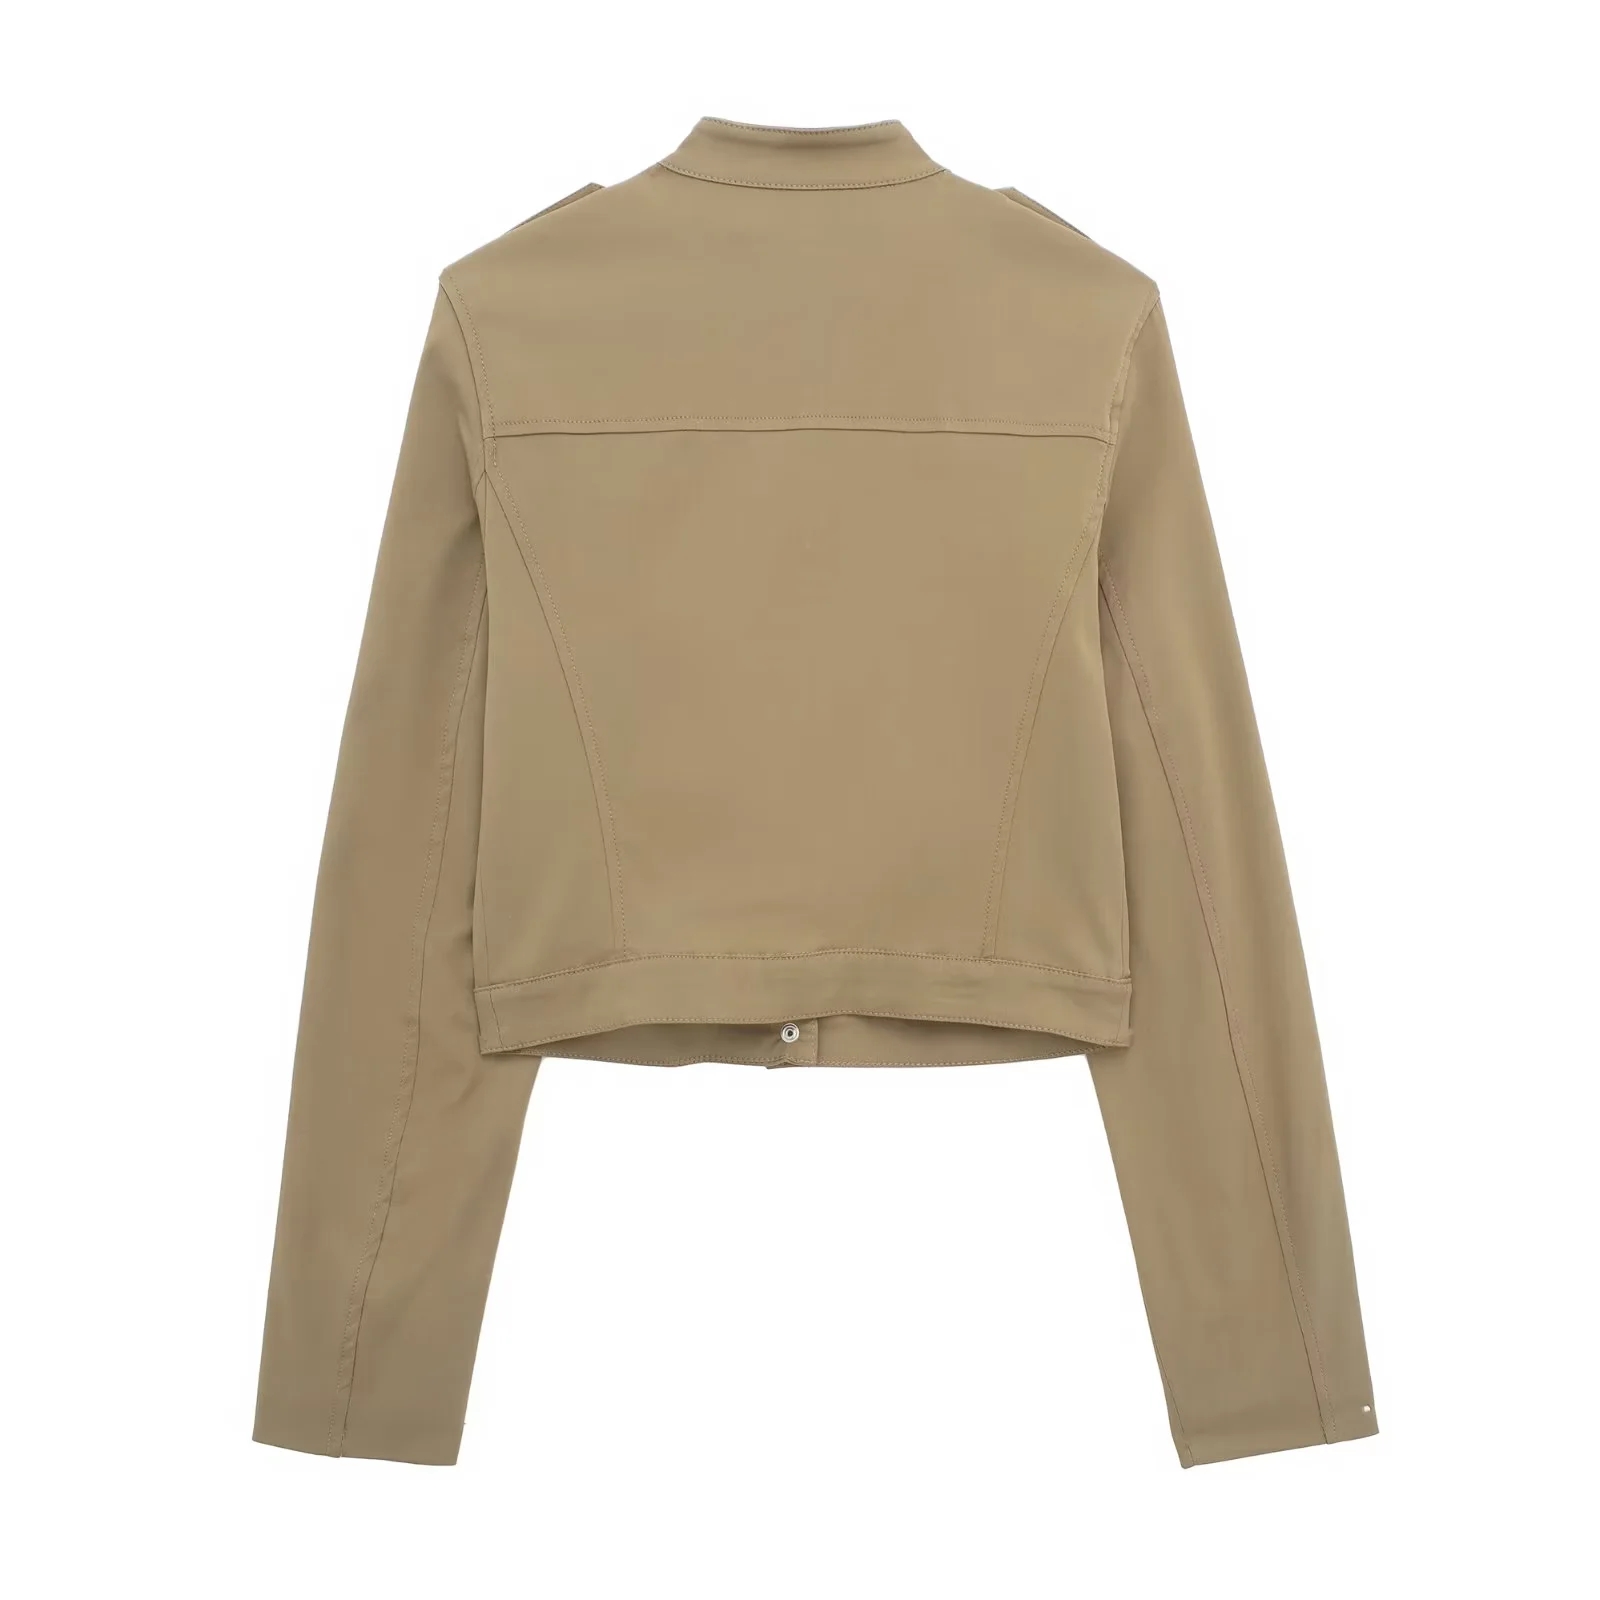 Fashion Khaki Blended Stand Collar Jacket,Coat-Jacket